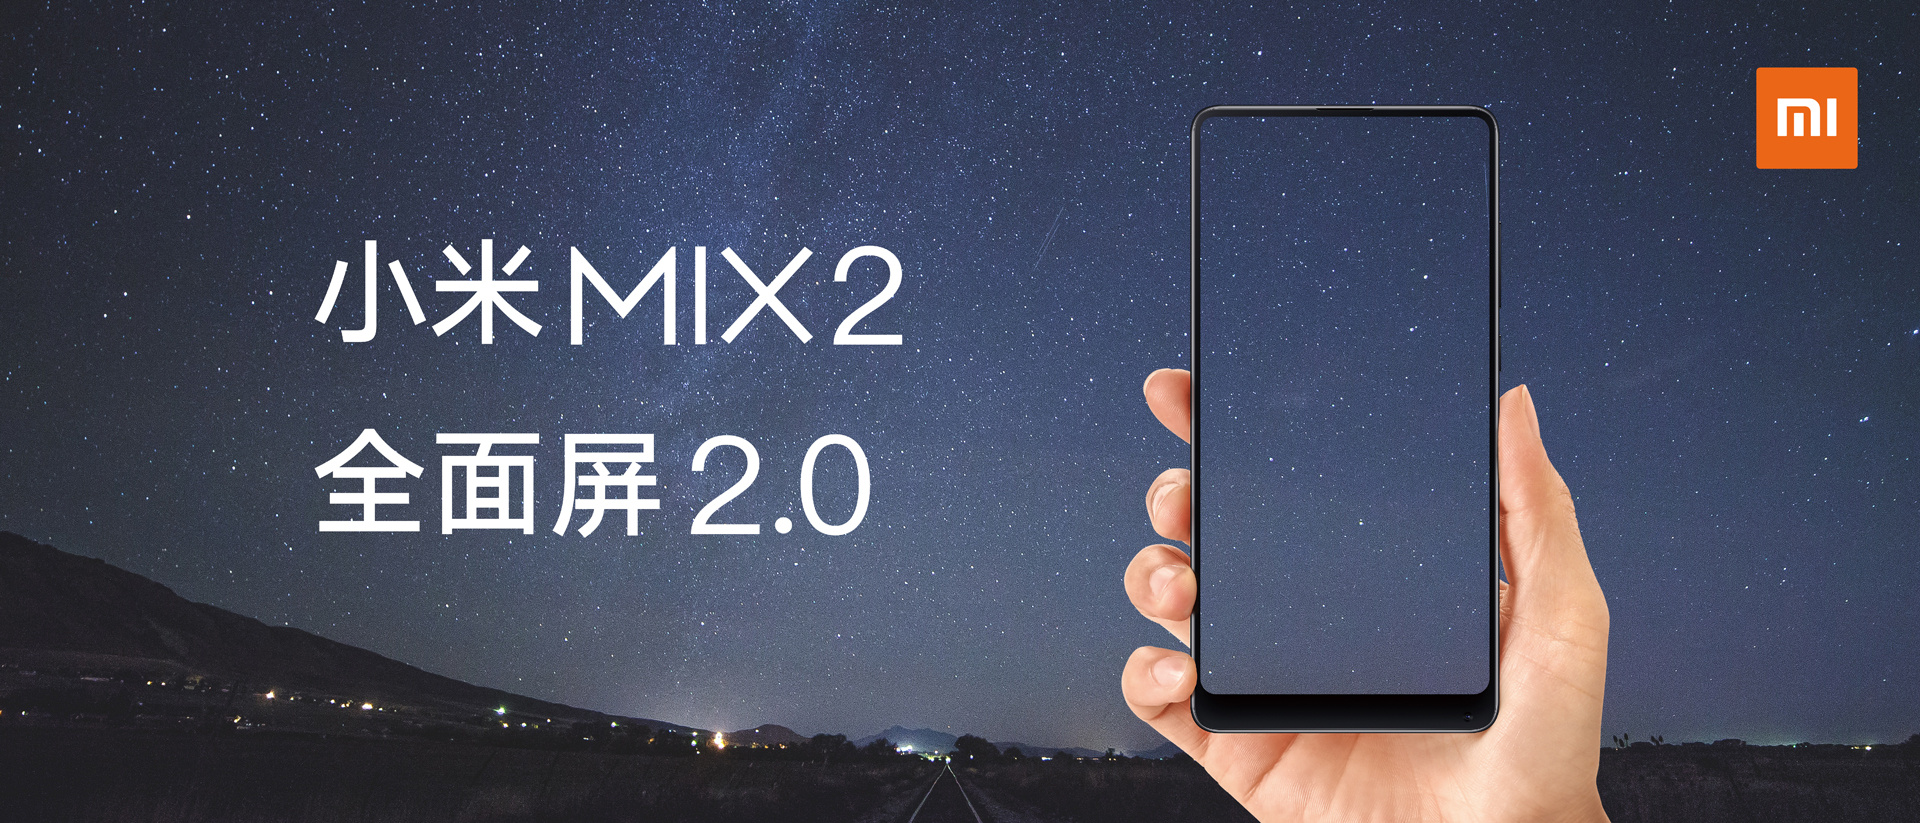 小米MIX2 正面几乎全是屏幕,仿佛握着一块透明